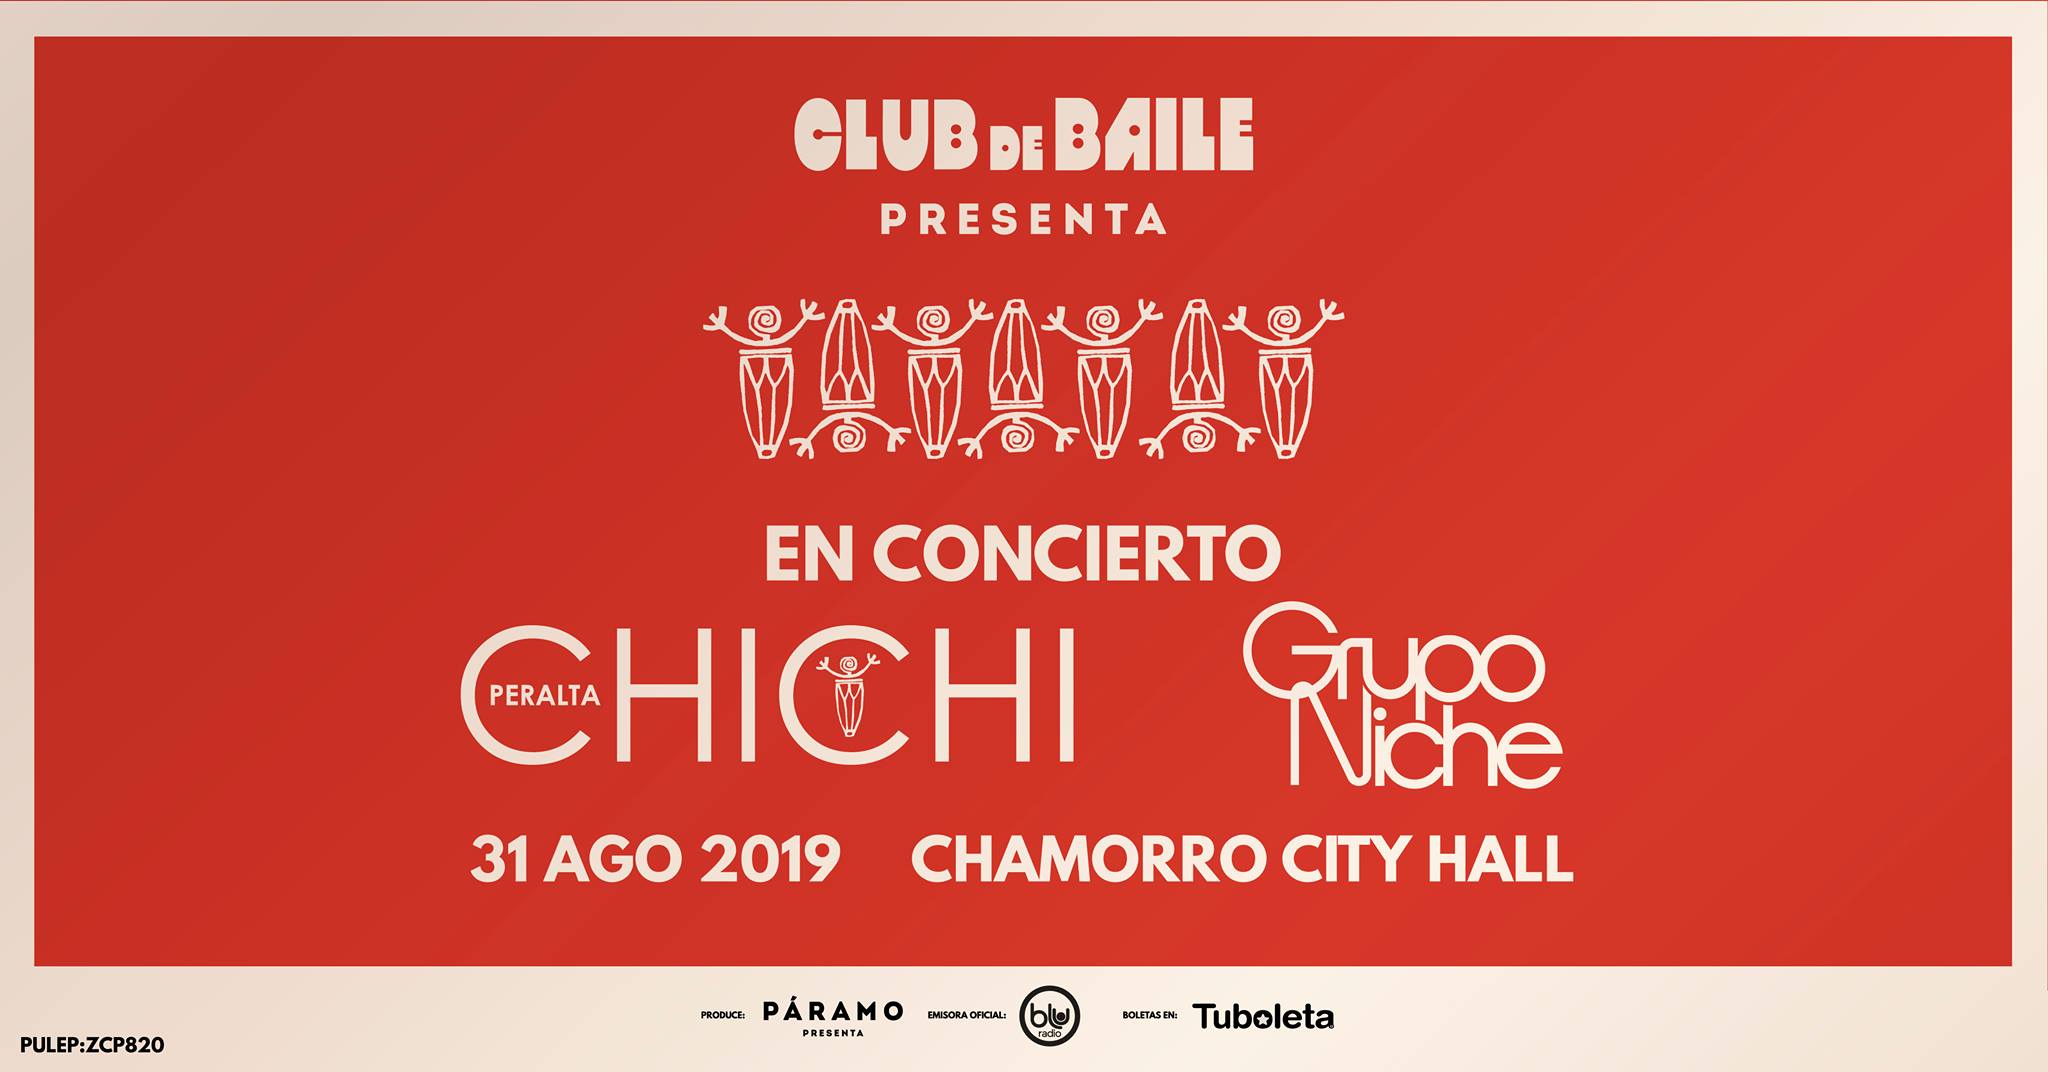 Club de Baile: Chichi Peralta y Grupo Niche en concierto